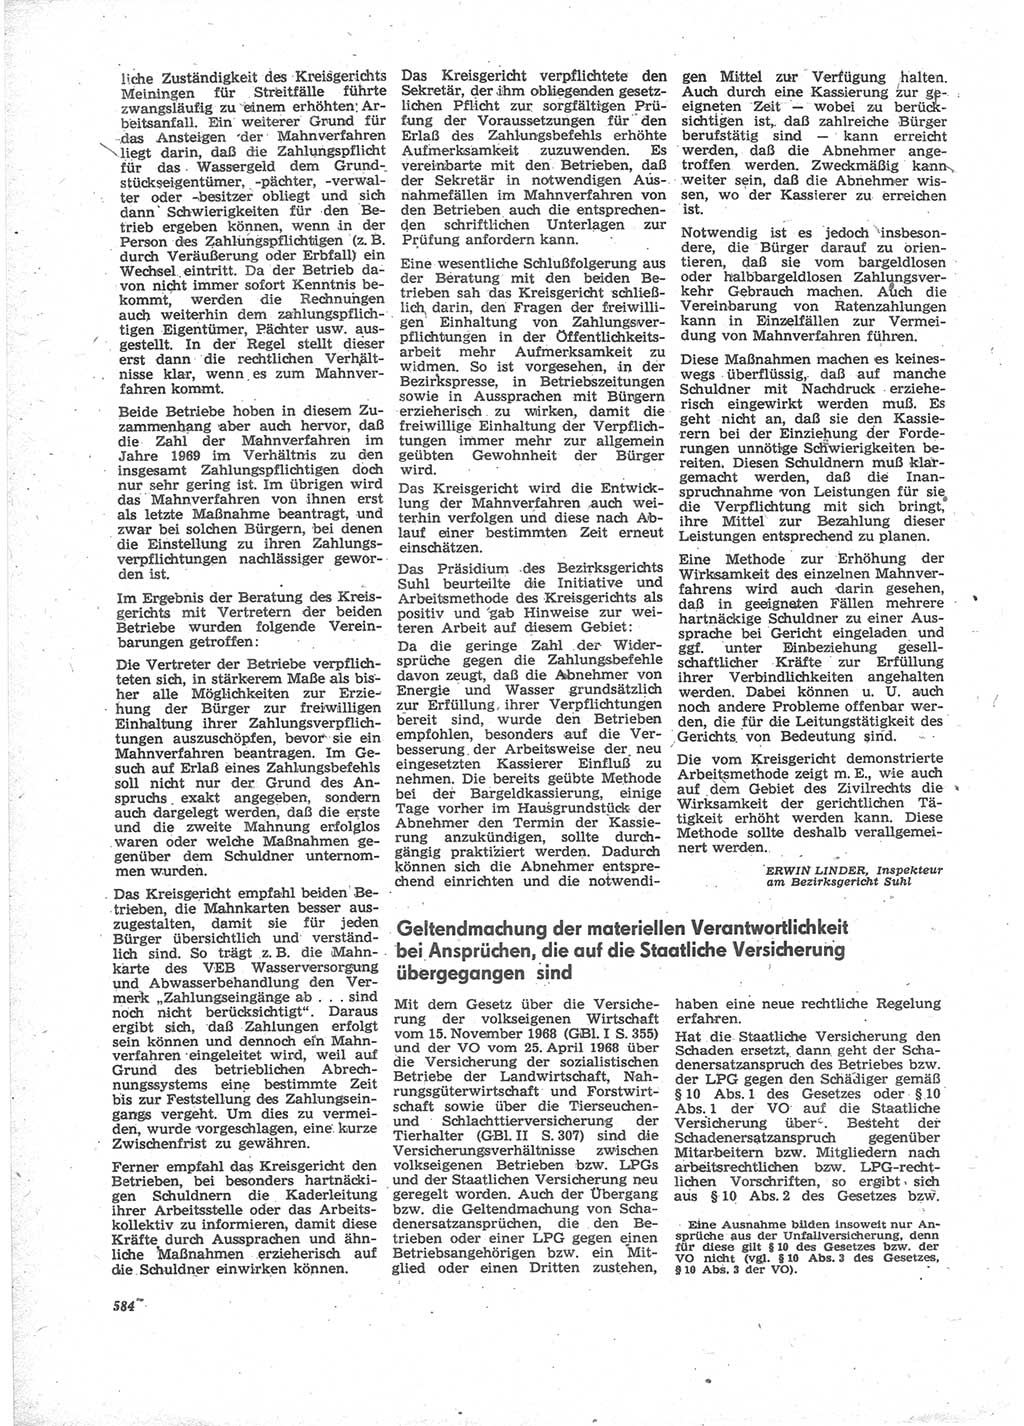 Neue Justiz (NJ), Zeitschrift für Recht und Rechtswissenschaft [Deutsche Demokratische Republik (DDR)], 24. Jahrgang 1970, Seite 584 (NJ DDR 1970, S. 584)